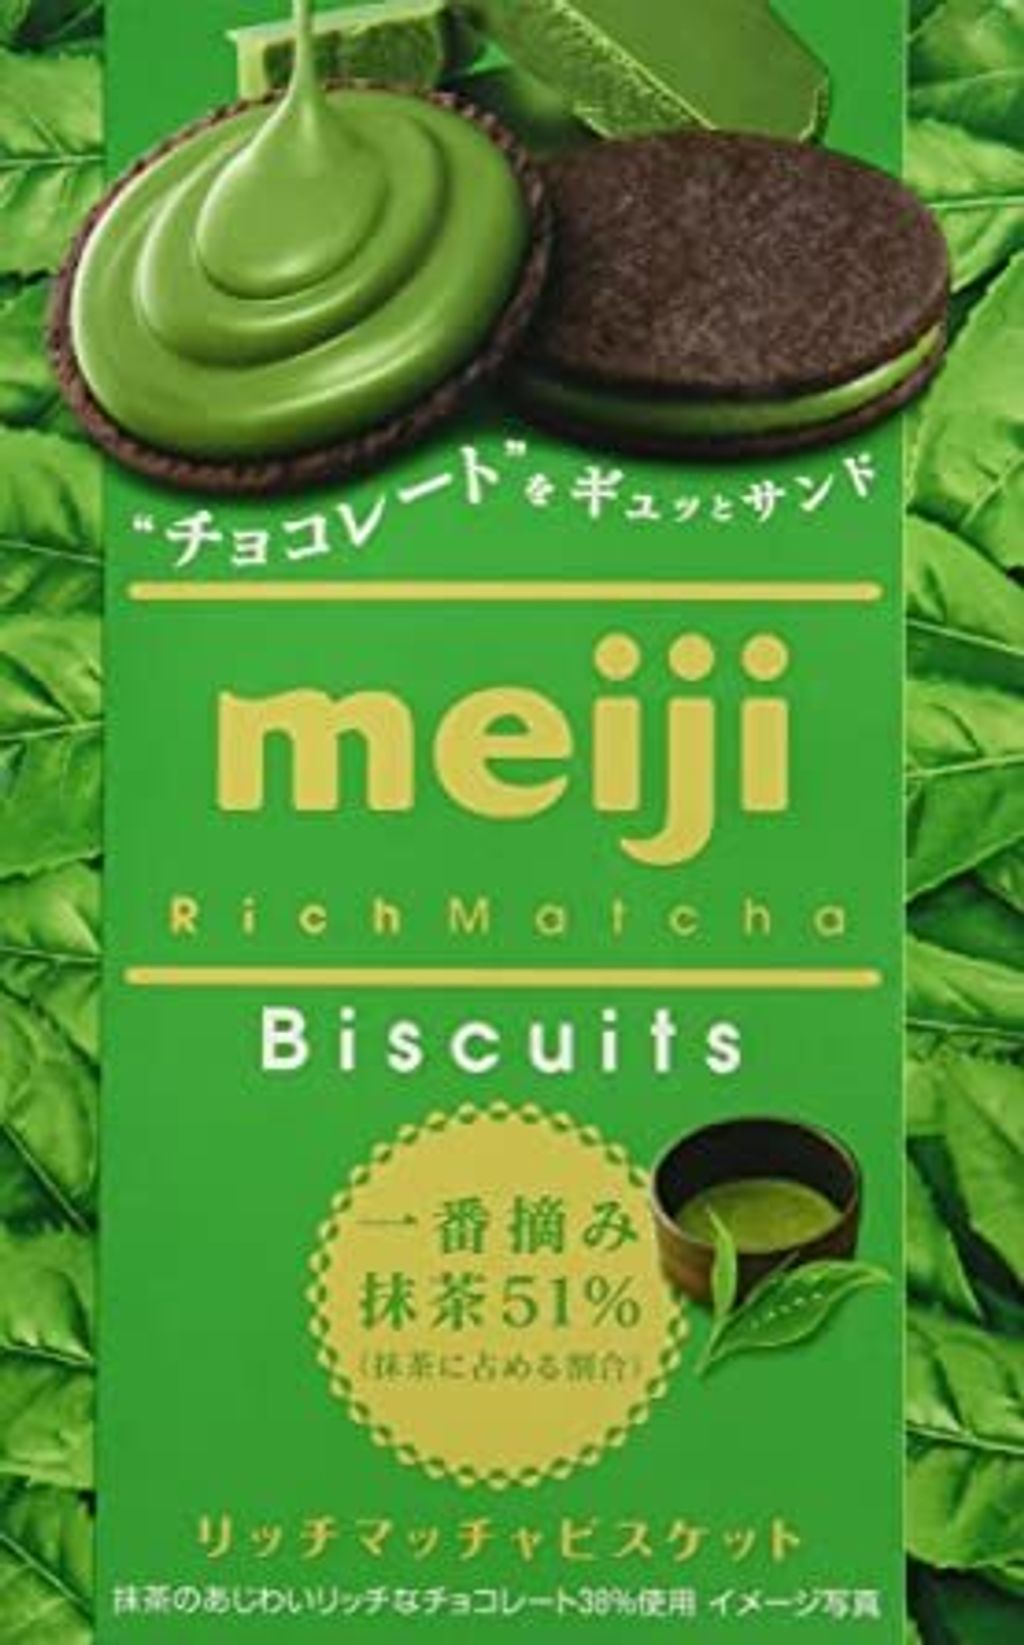 Meiji Matcha Biscuit.jpg